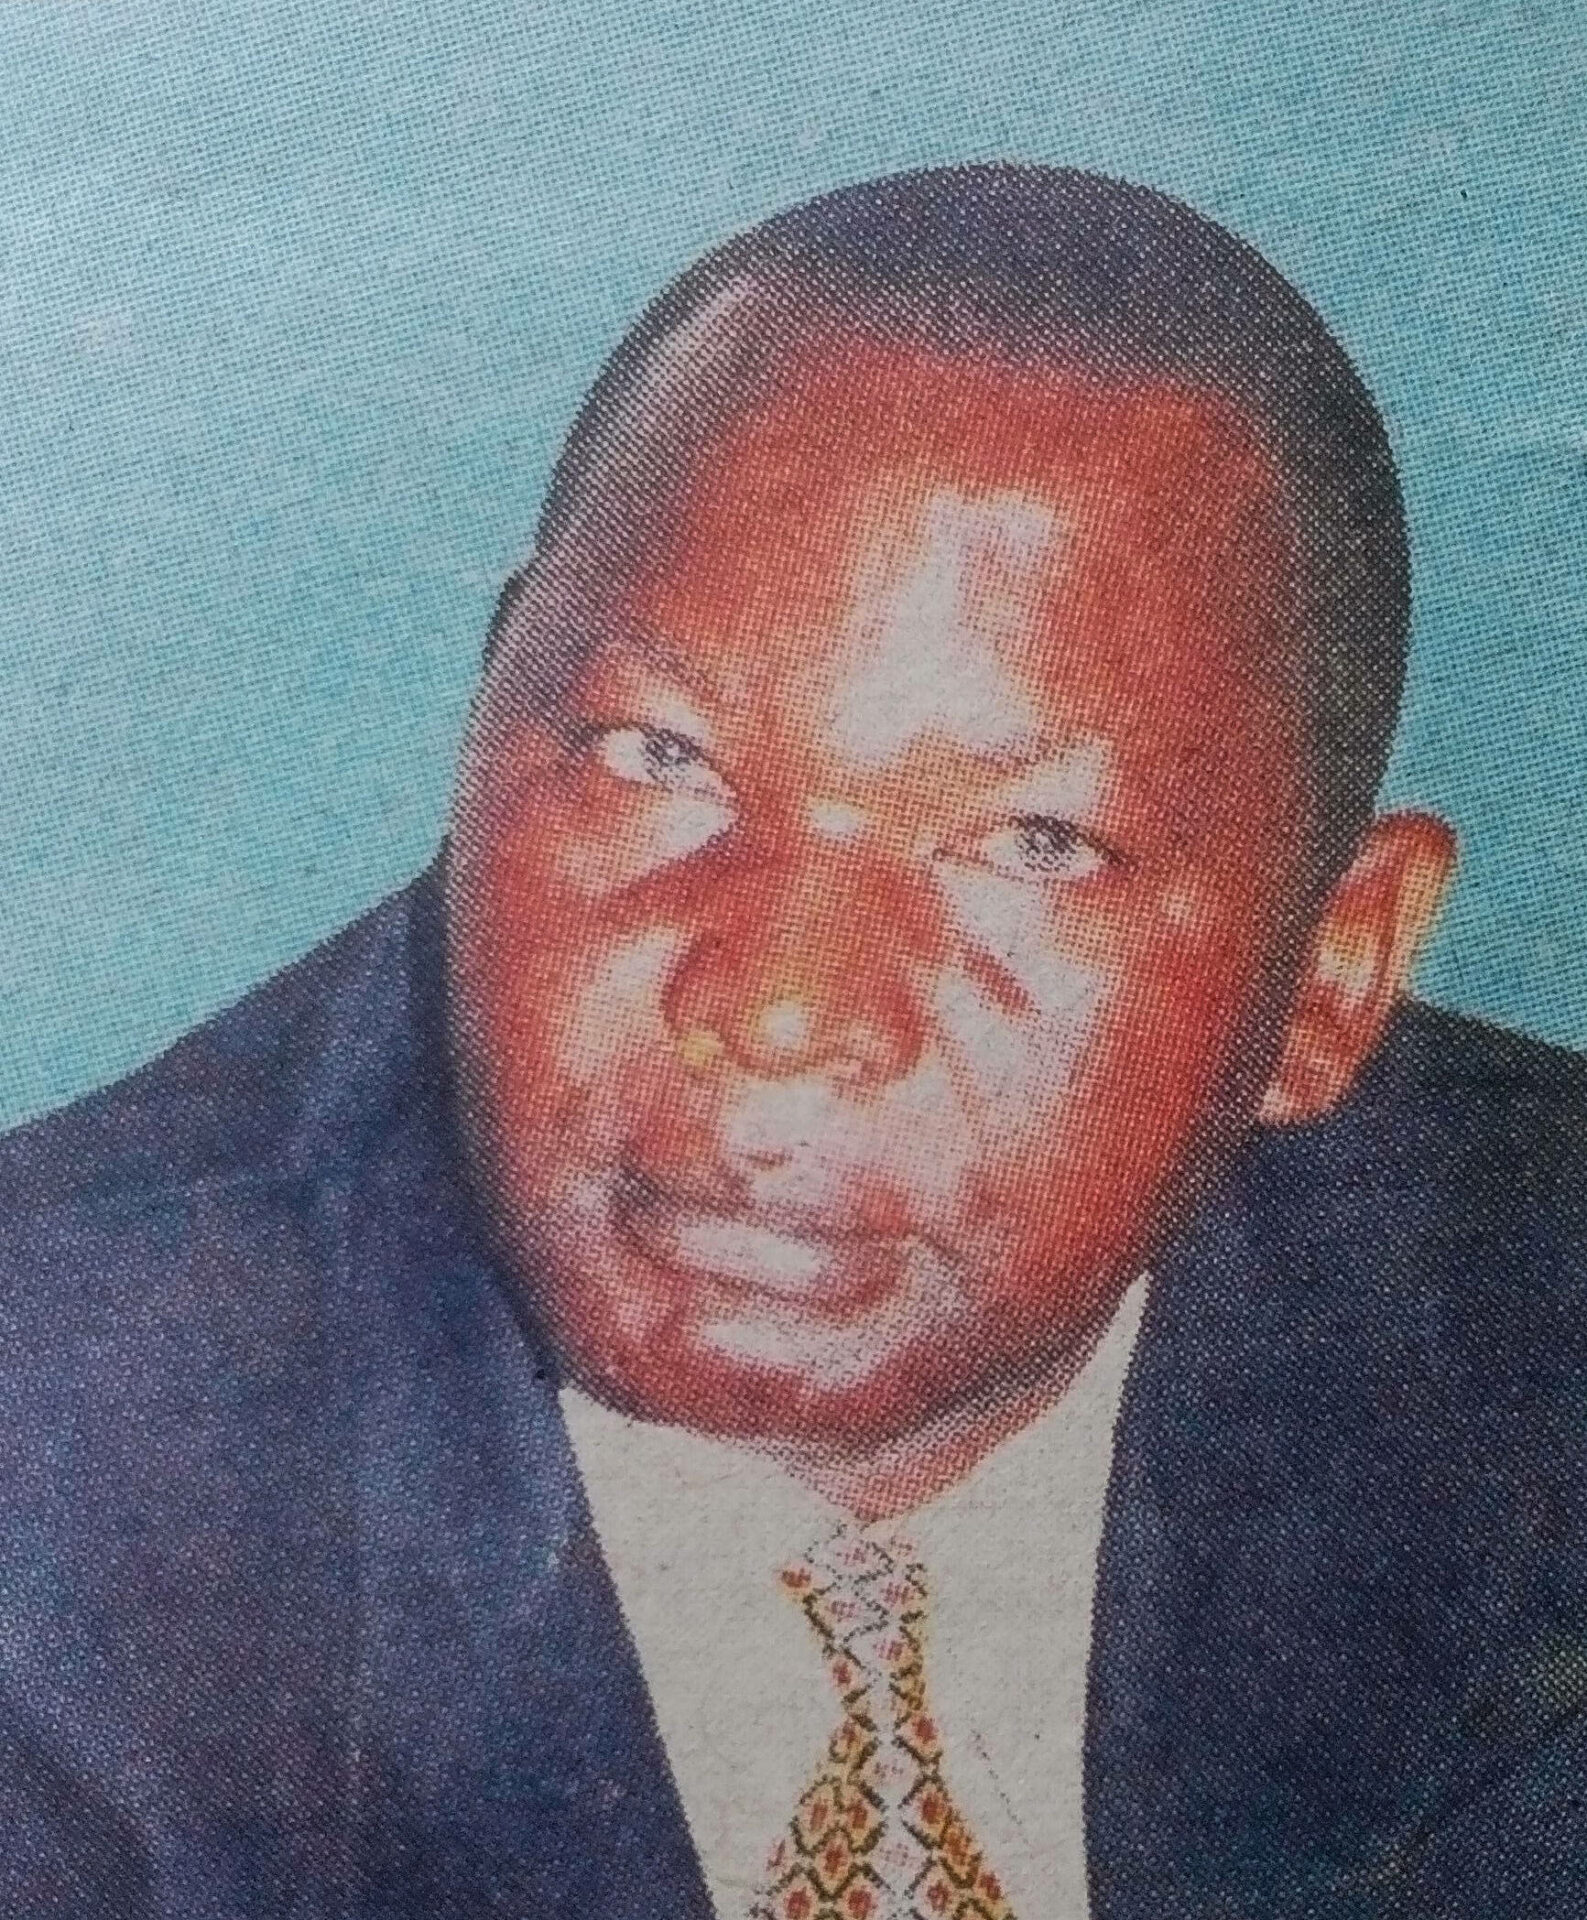 Obituary Image of Thomas Nyakango Abere (1948-2017)